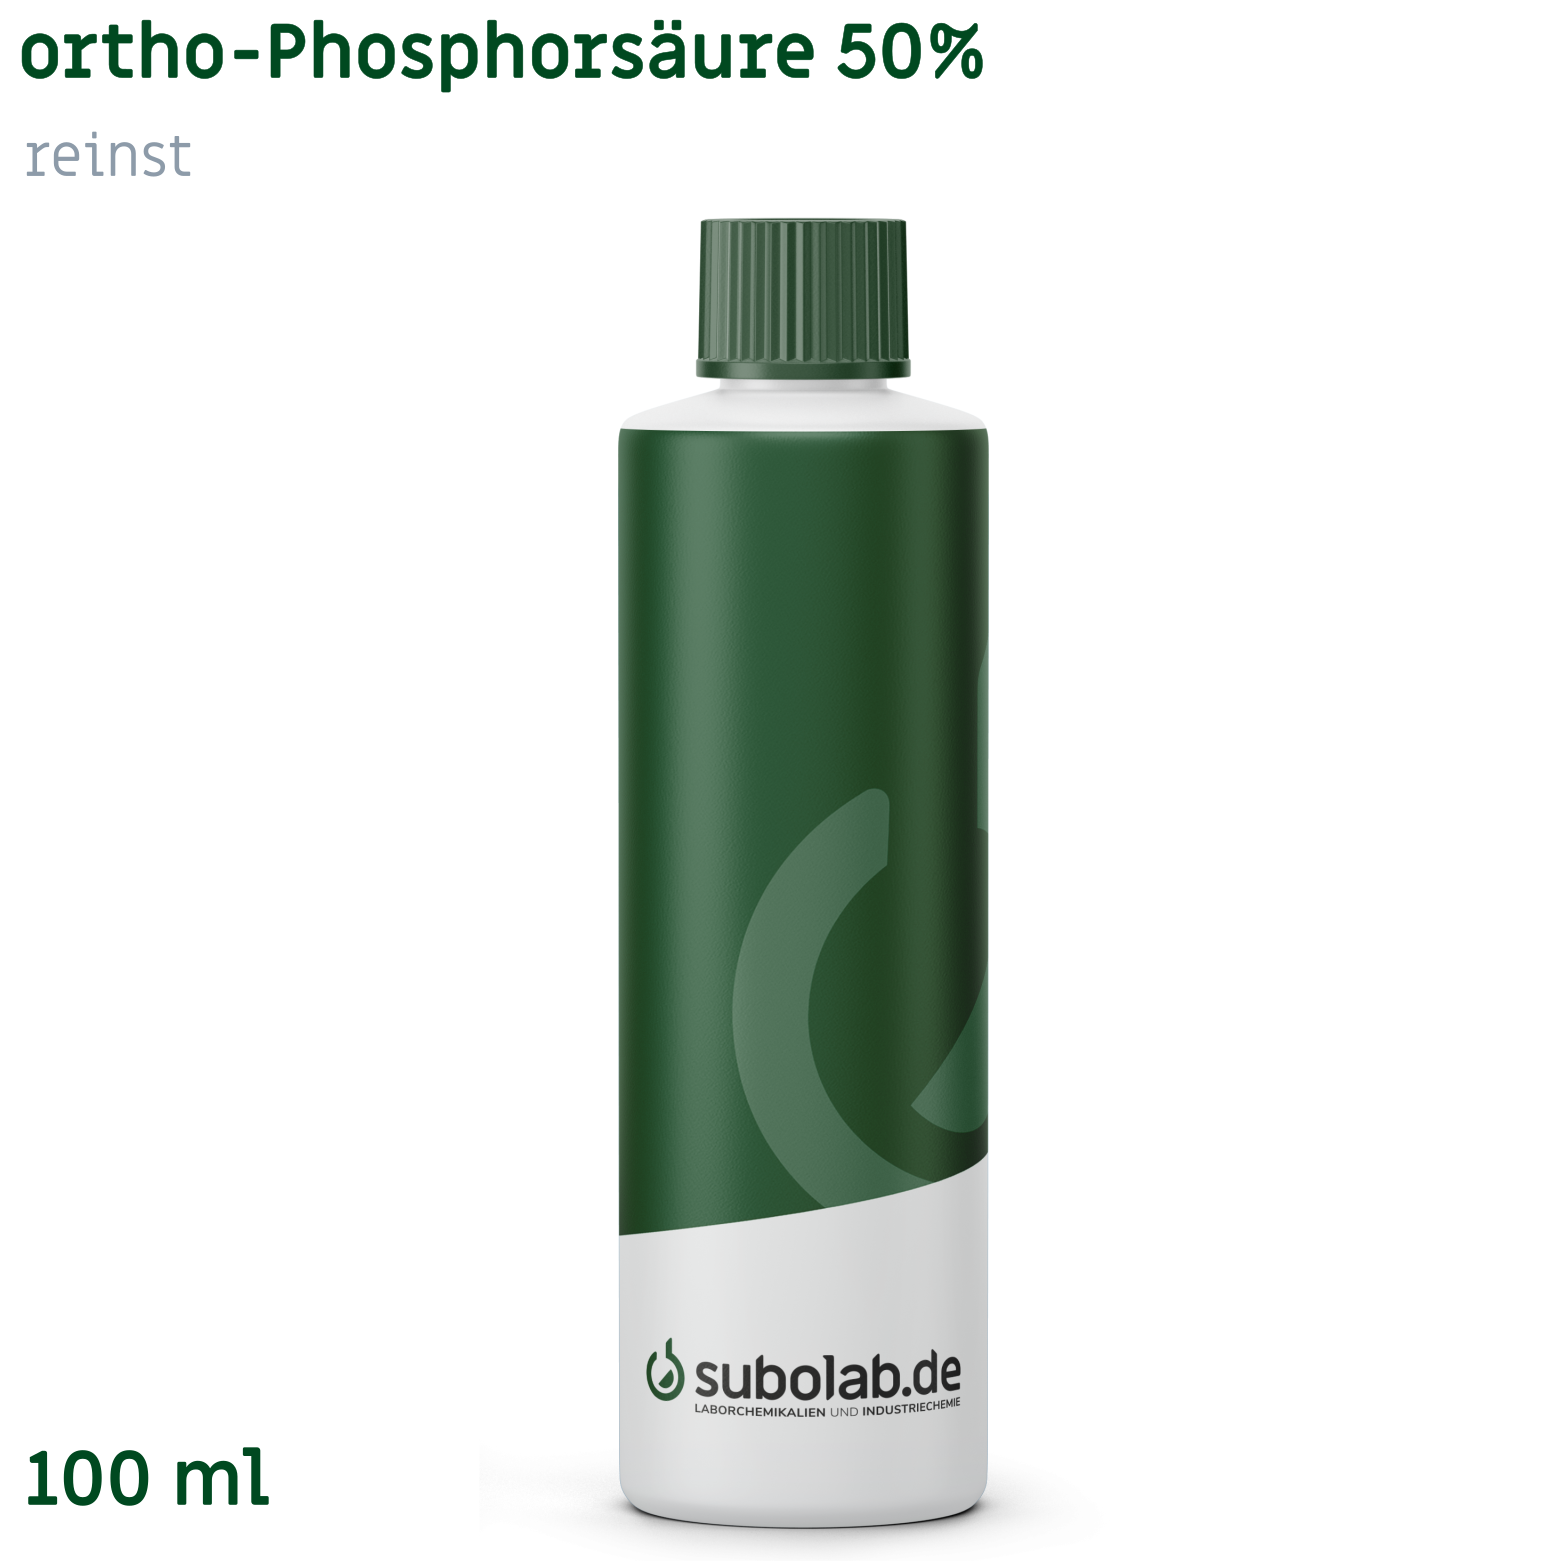 Bild von ortho-Phosphorsäure 50% reinst (100 ml)